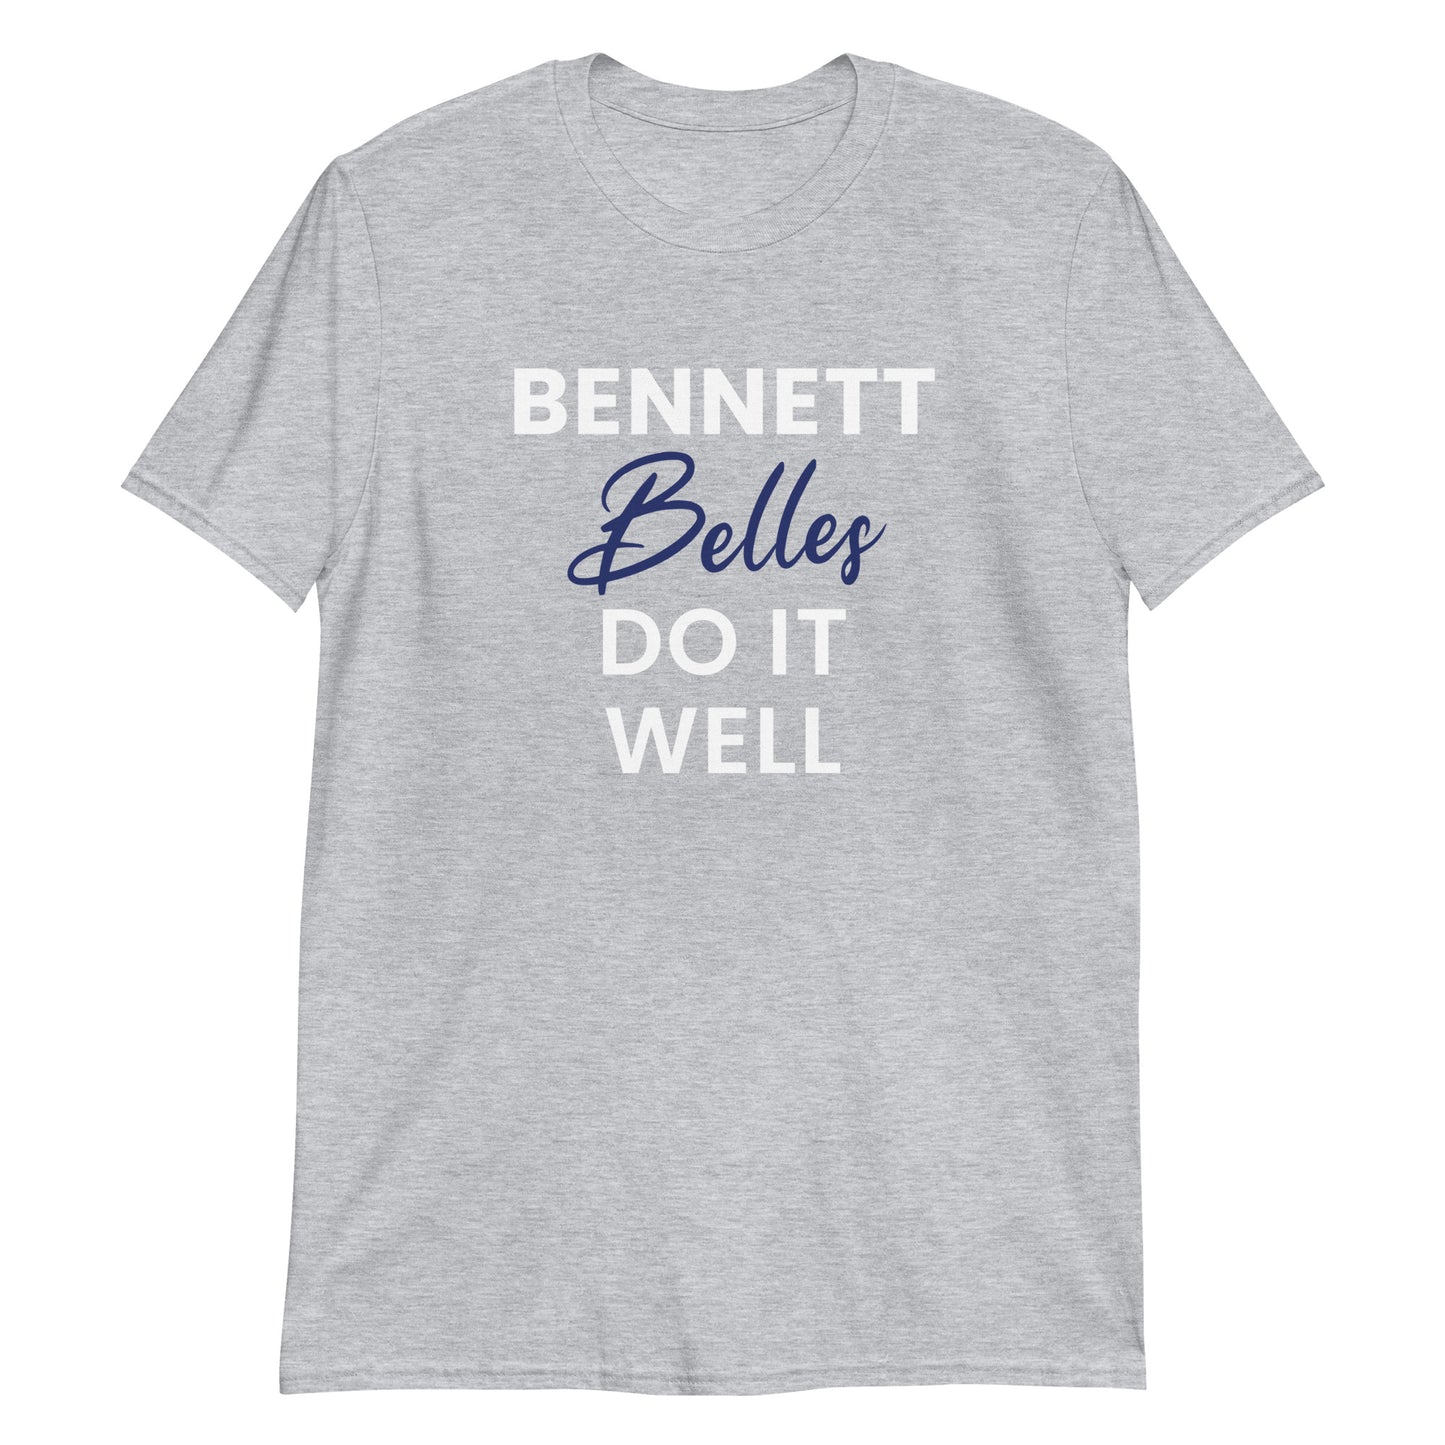 Bennett Belles Do It Well Short-Sleeve Unisex T-Shirt